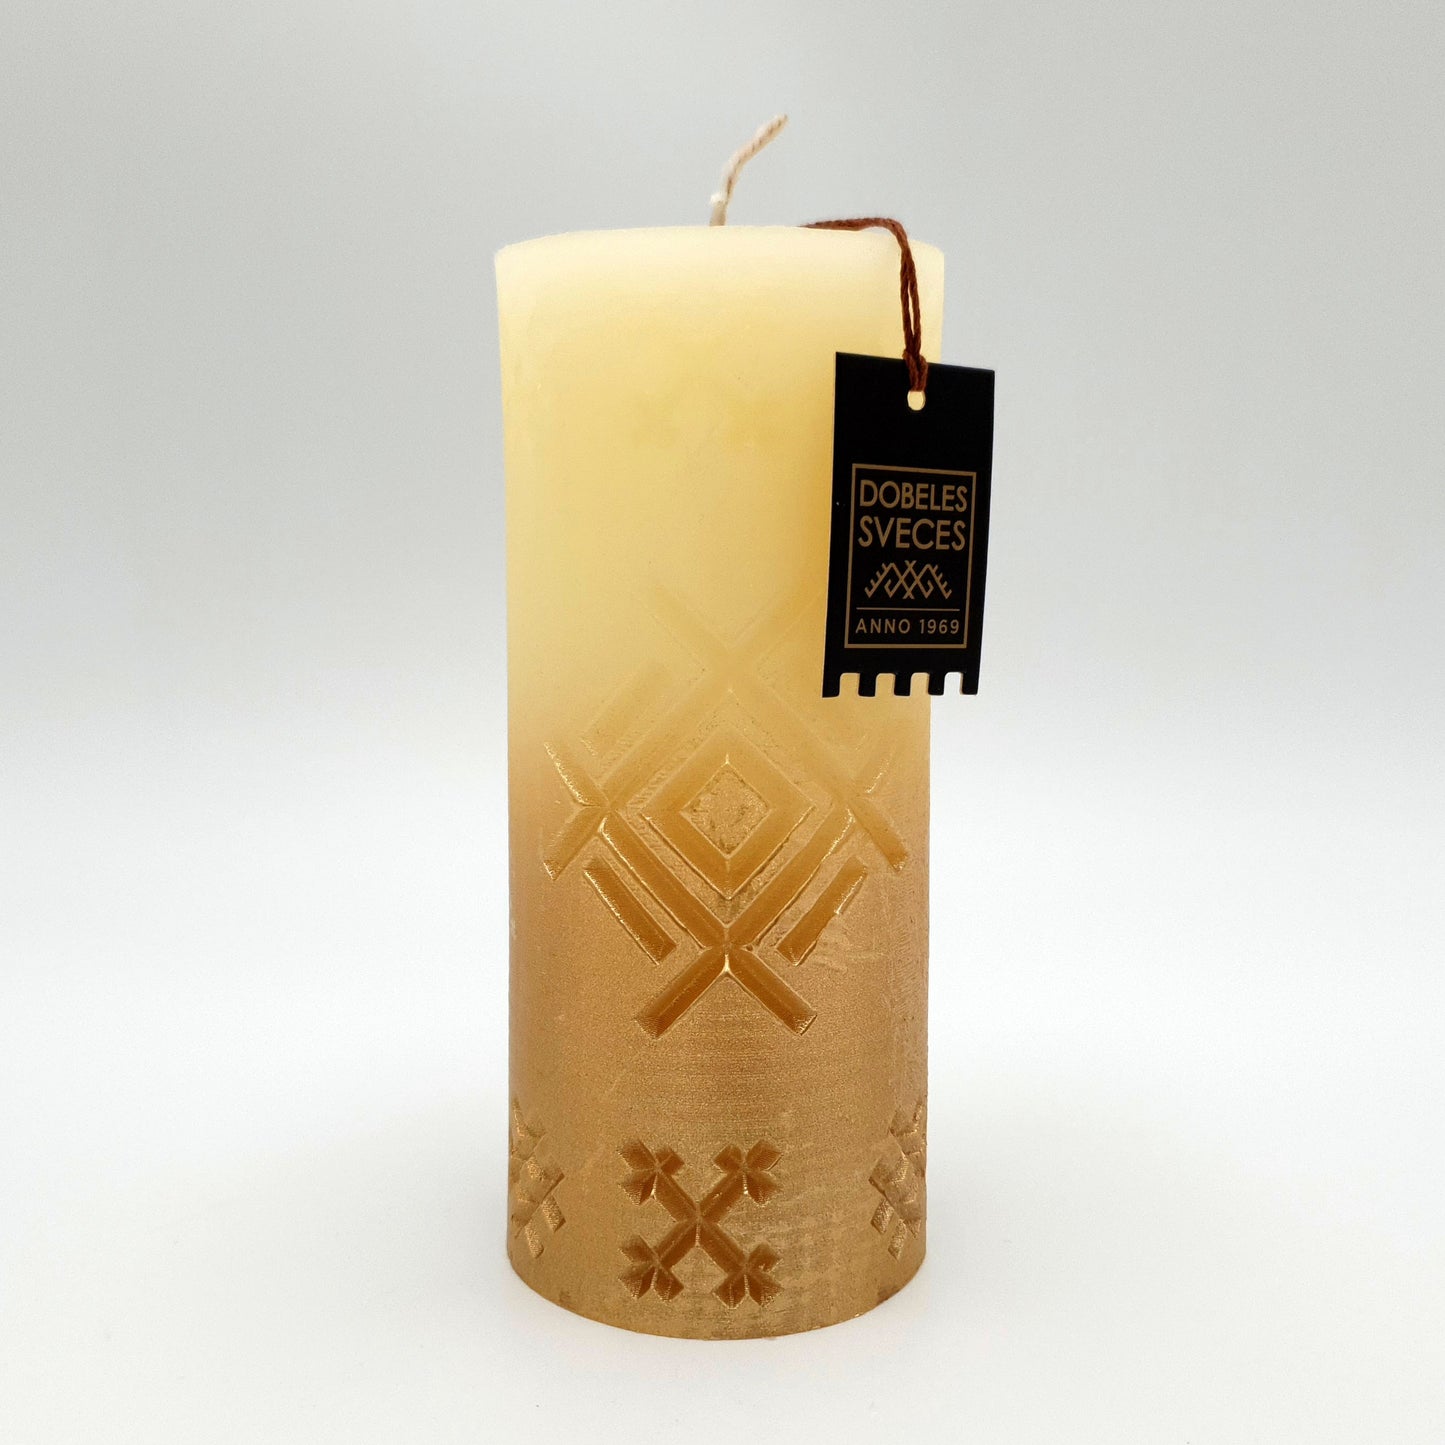 Svece ar latvju rakstu zīmi "Aka", ziloņkaula ar zeltu